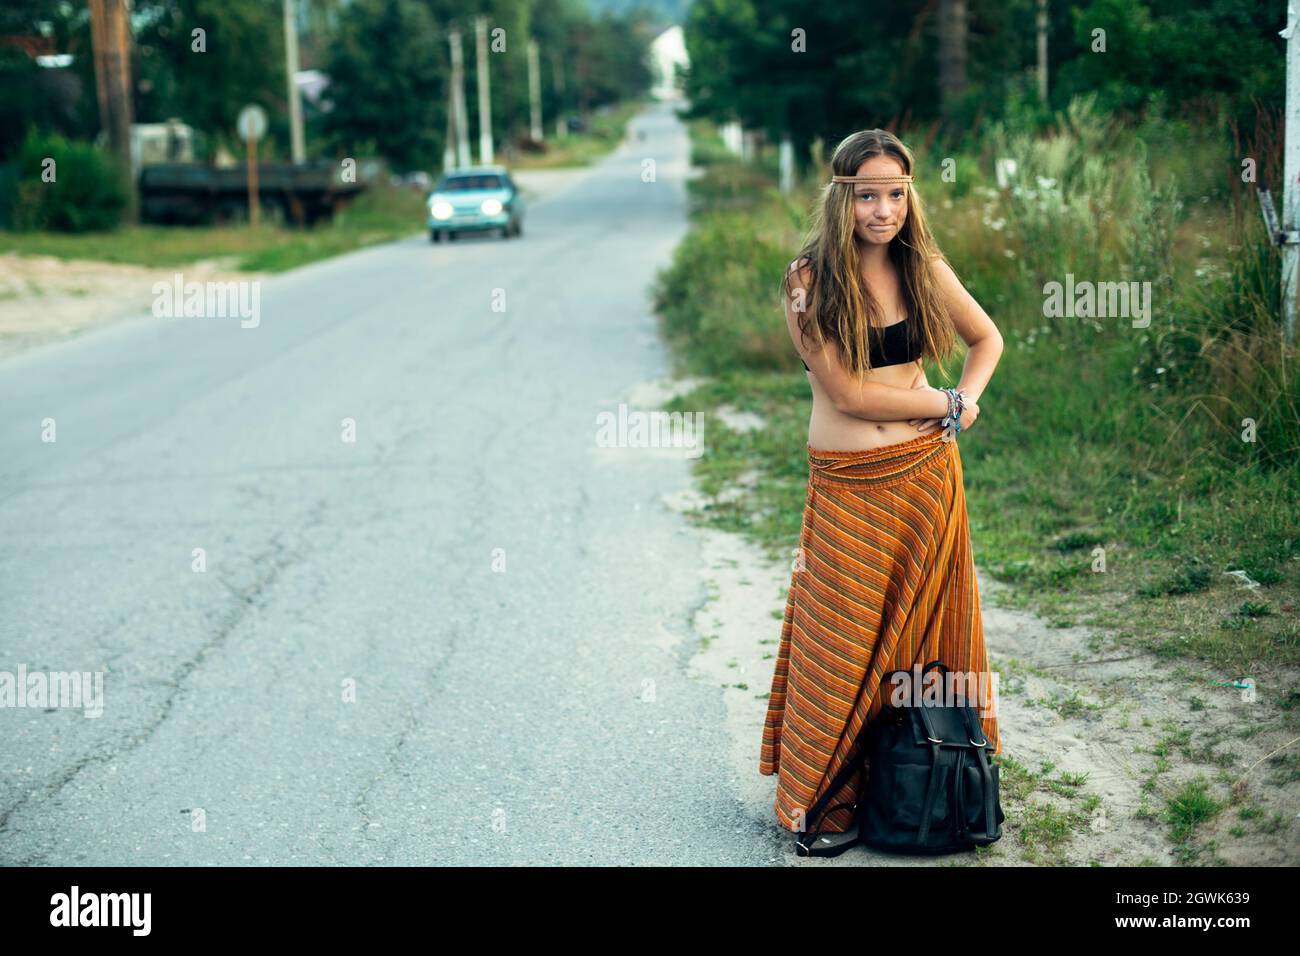 Ein Hippie-Mädchen, das in der Nähe der Straße stimmt. Anhalter für Wanderungen. Stockfoto